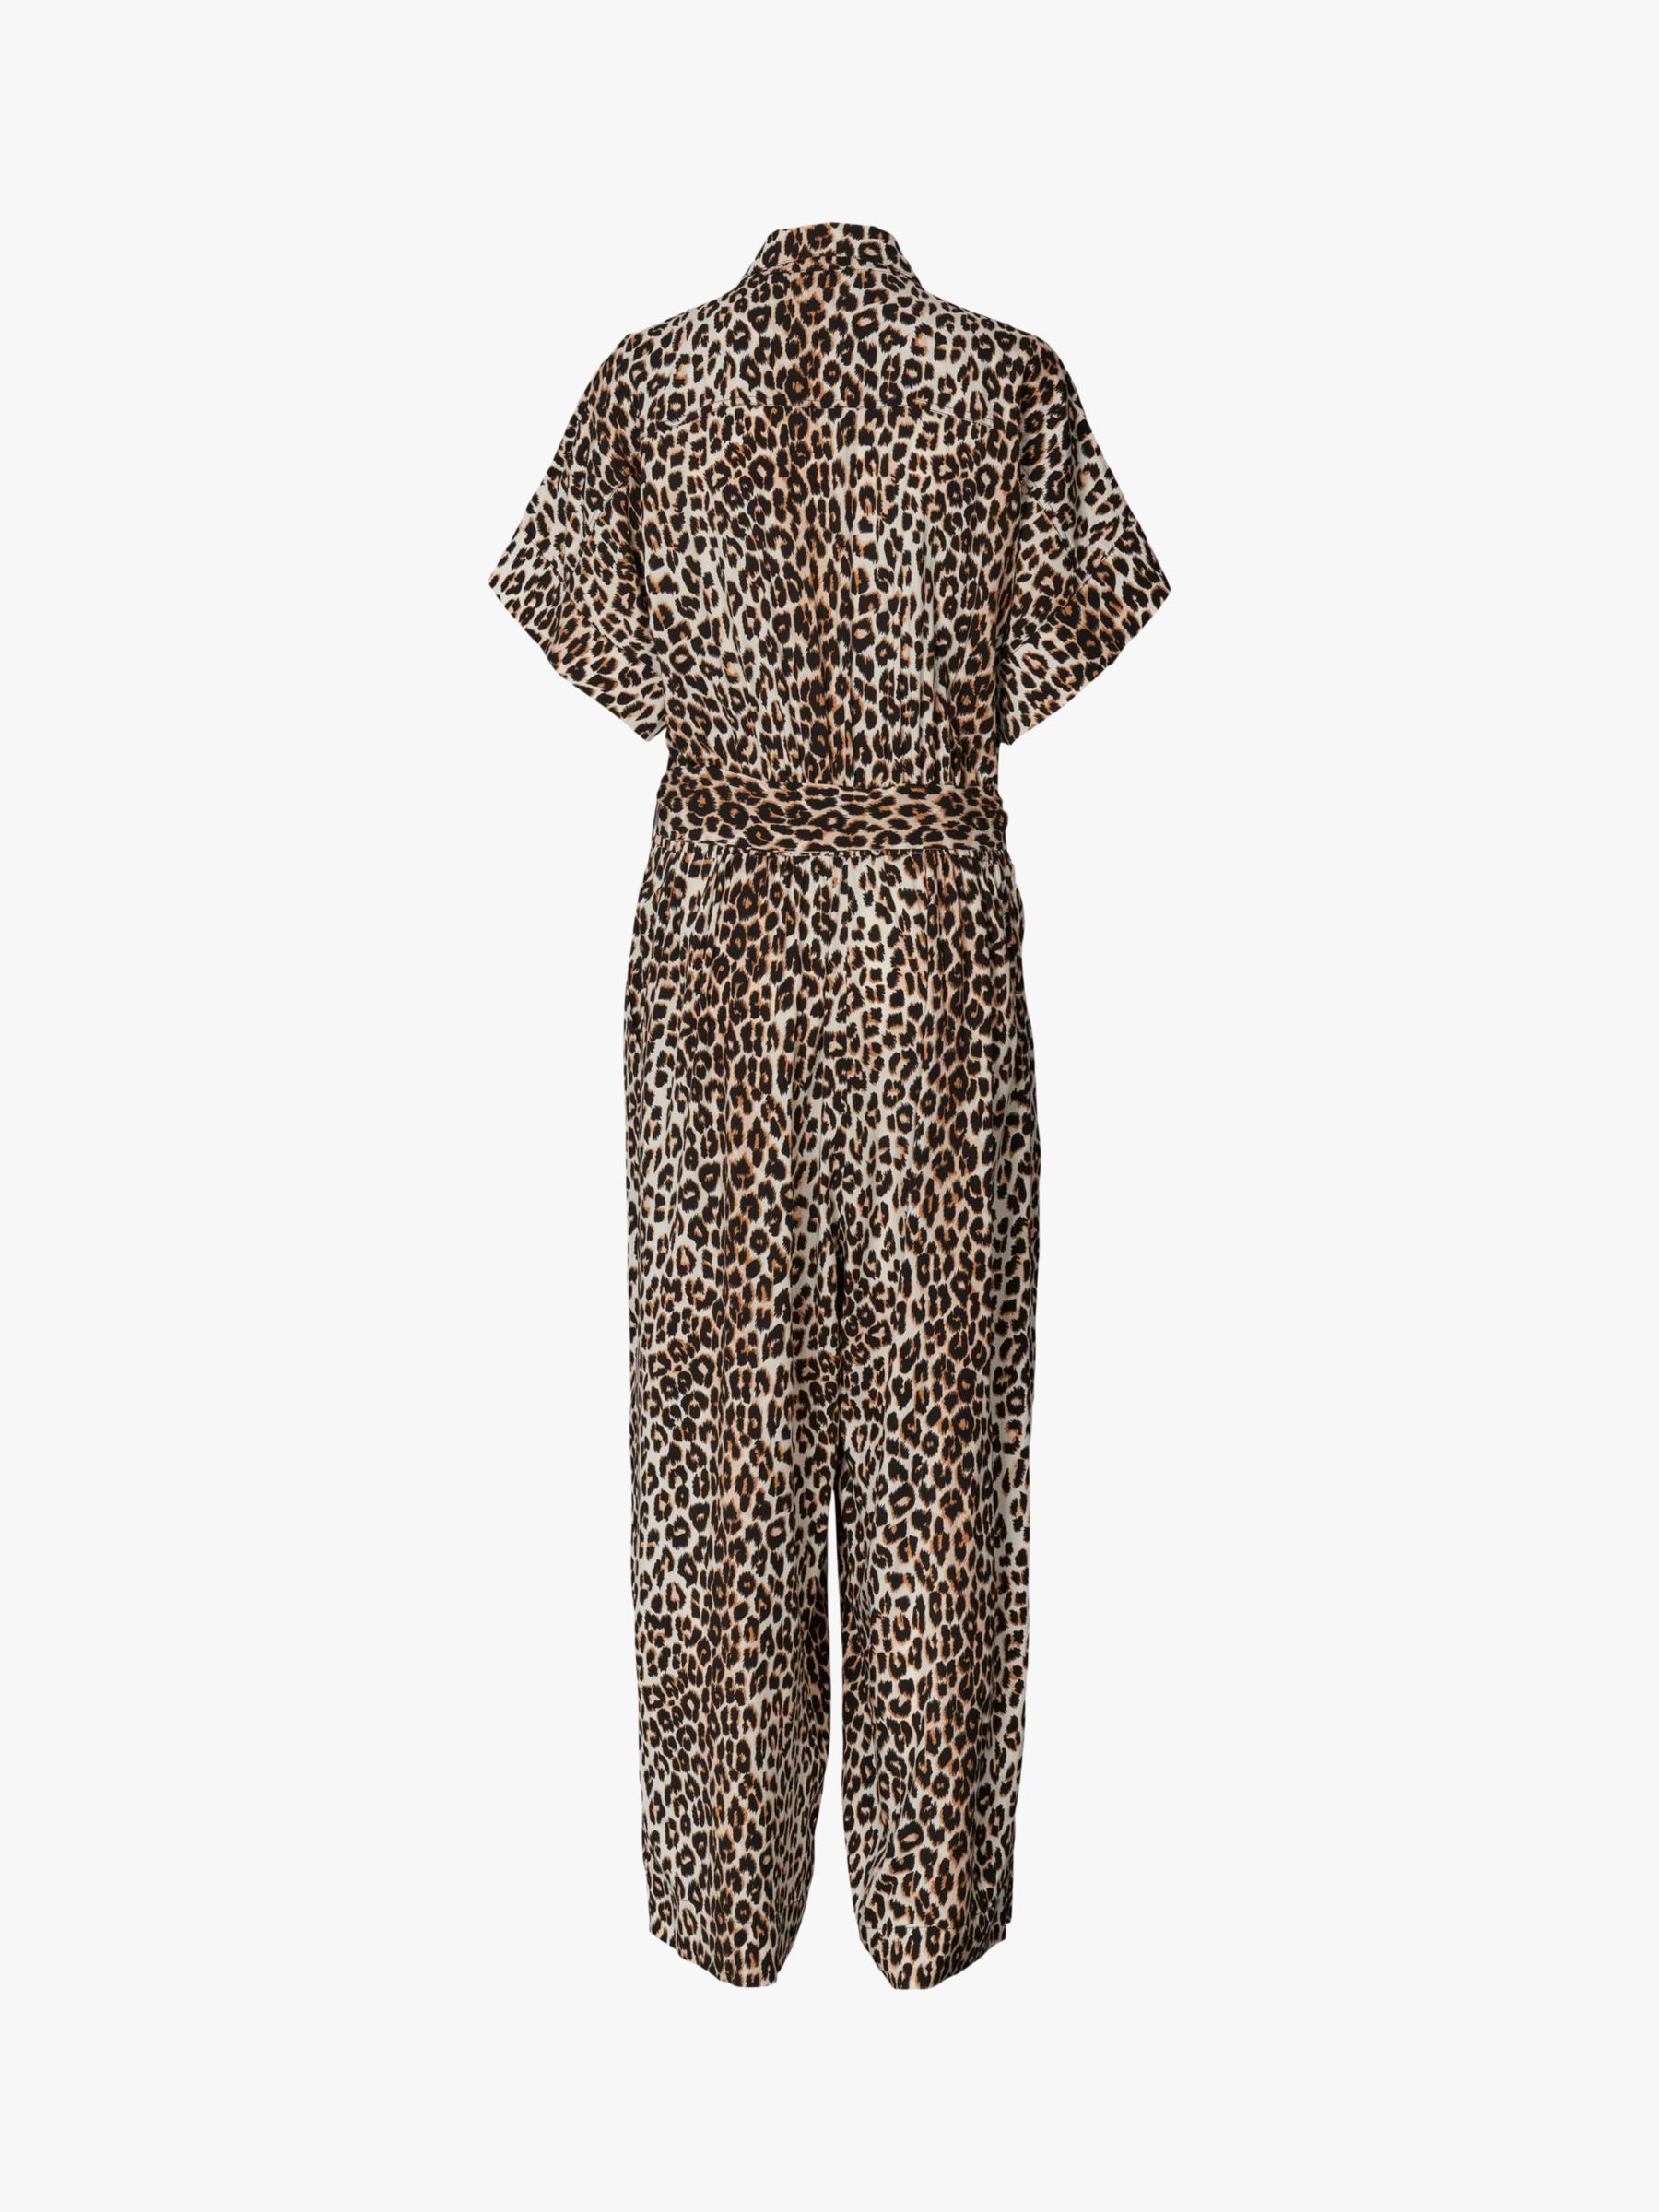 Lollys Laundry Mathilde Leopard Print Jumpsuit, Brown/Multi, XS